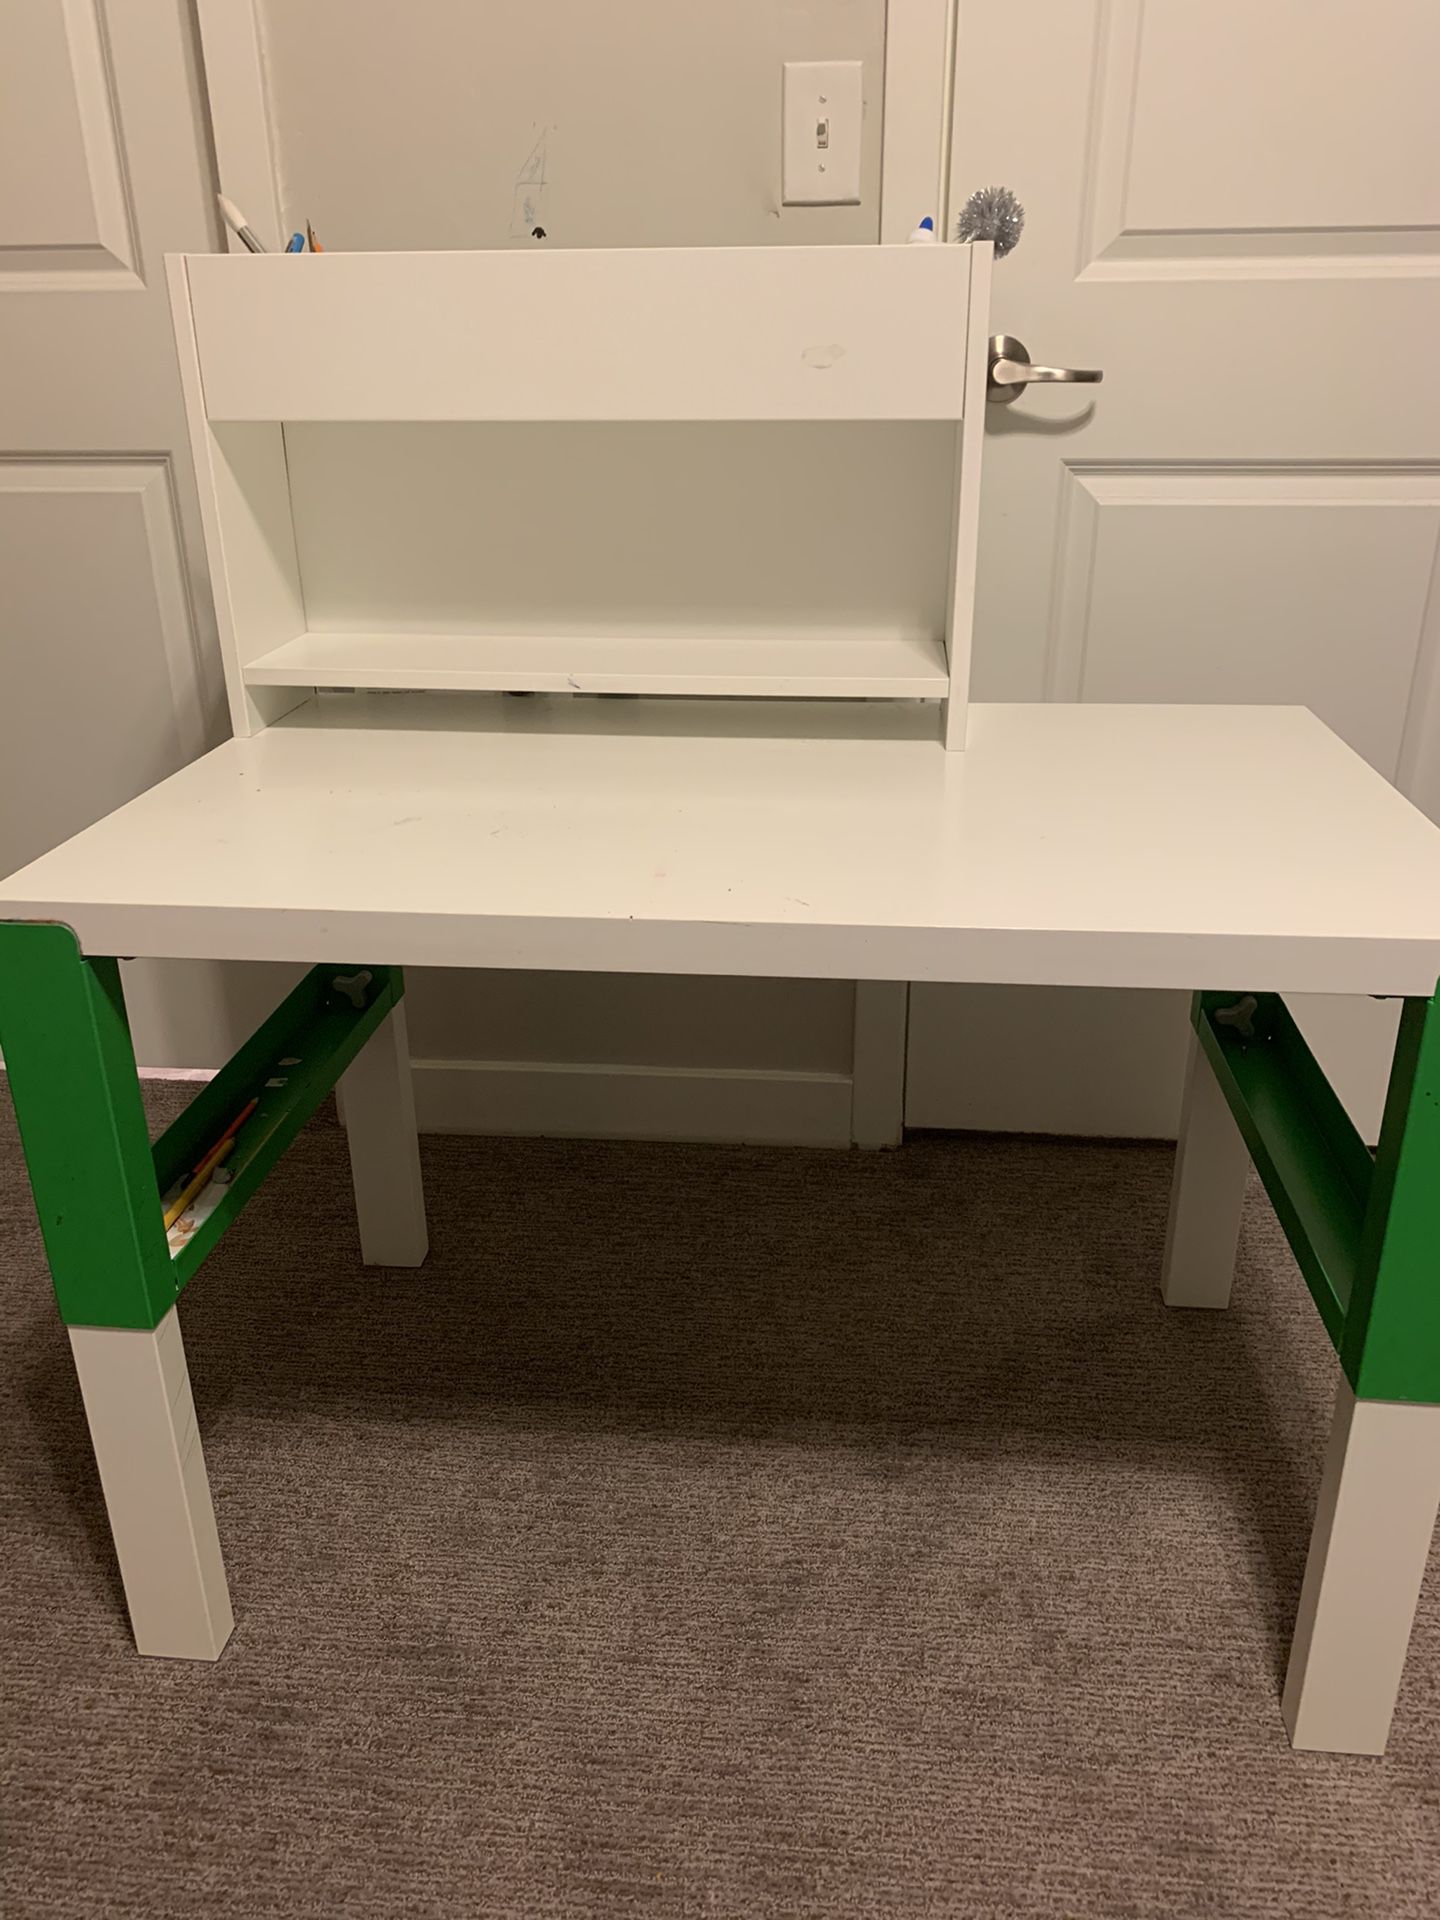 IKEA Kids Desk Adjustable